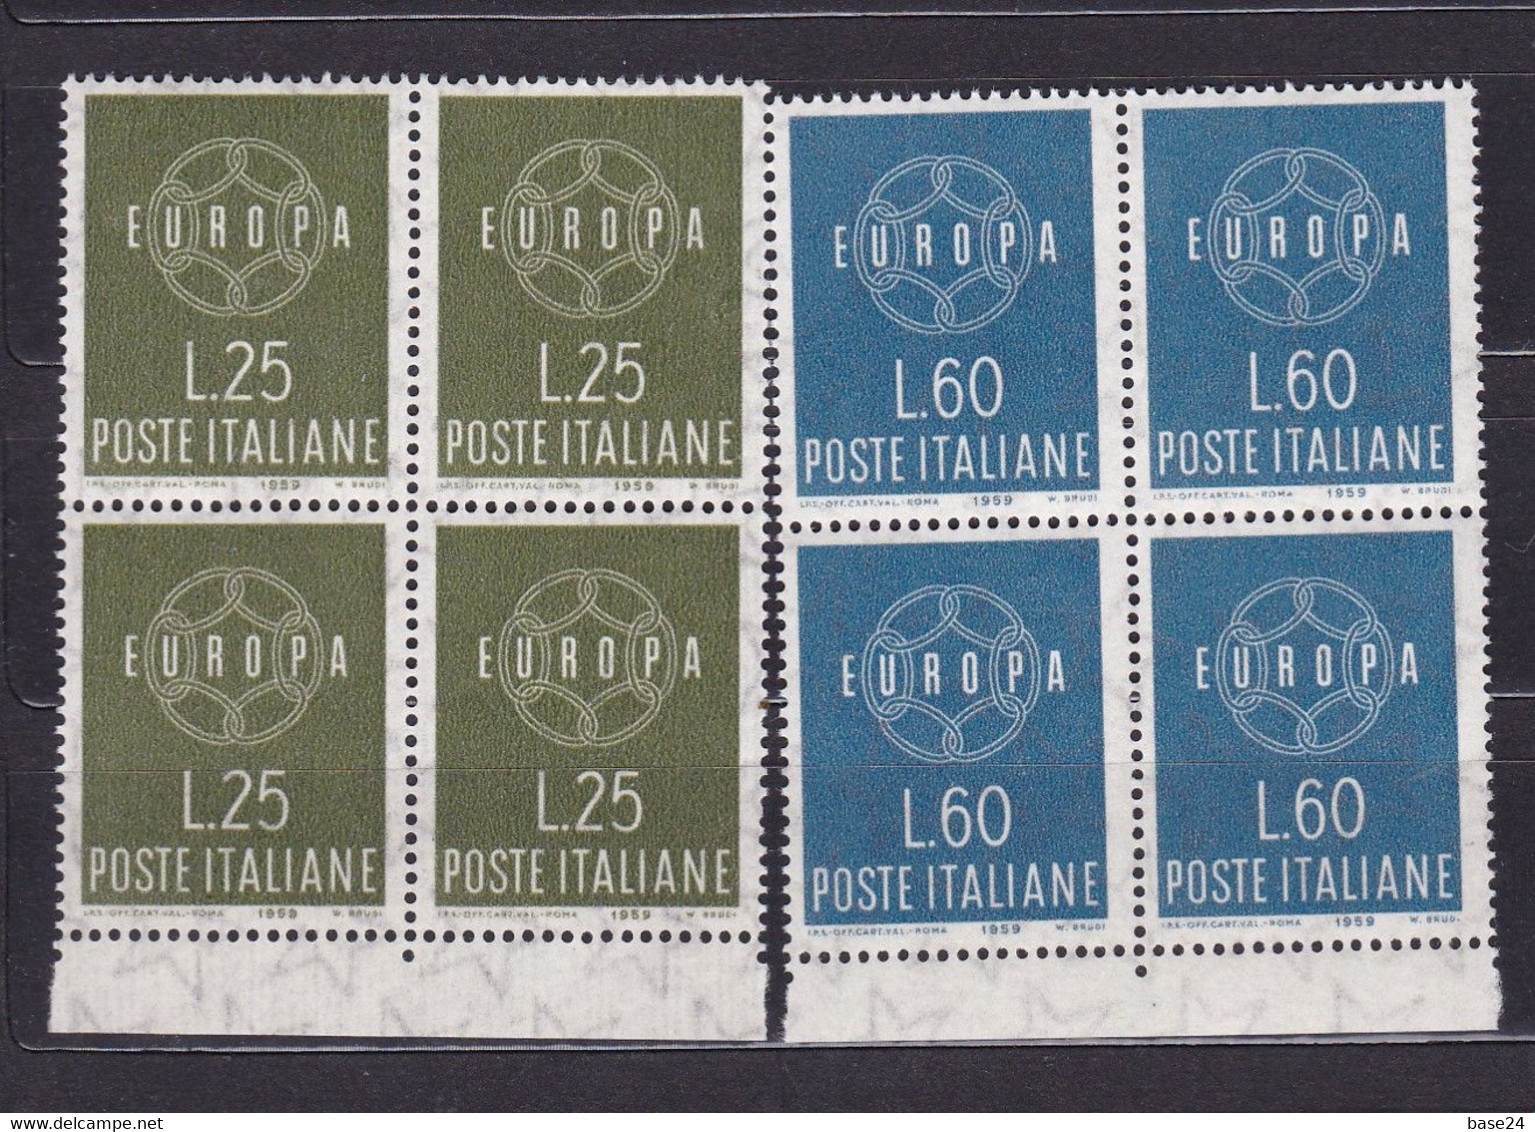 1959 Italia Italy Repubblica EUROPA CEPT  EUROPE 4 Serie Di 2 Valori In Quartina MNH** CATENA 6 ANELLI - CHAIN Block 4 - 1959